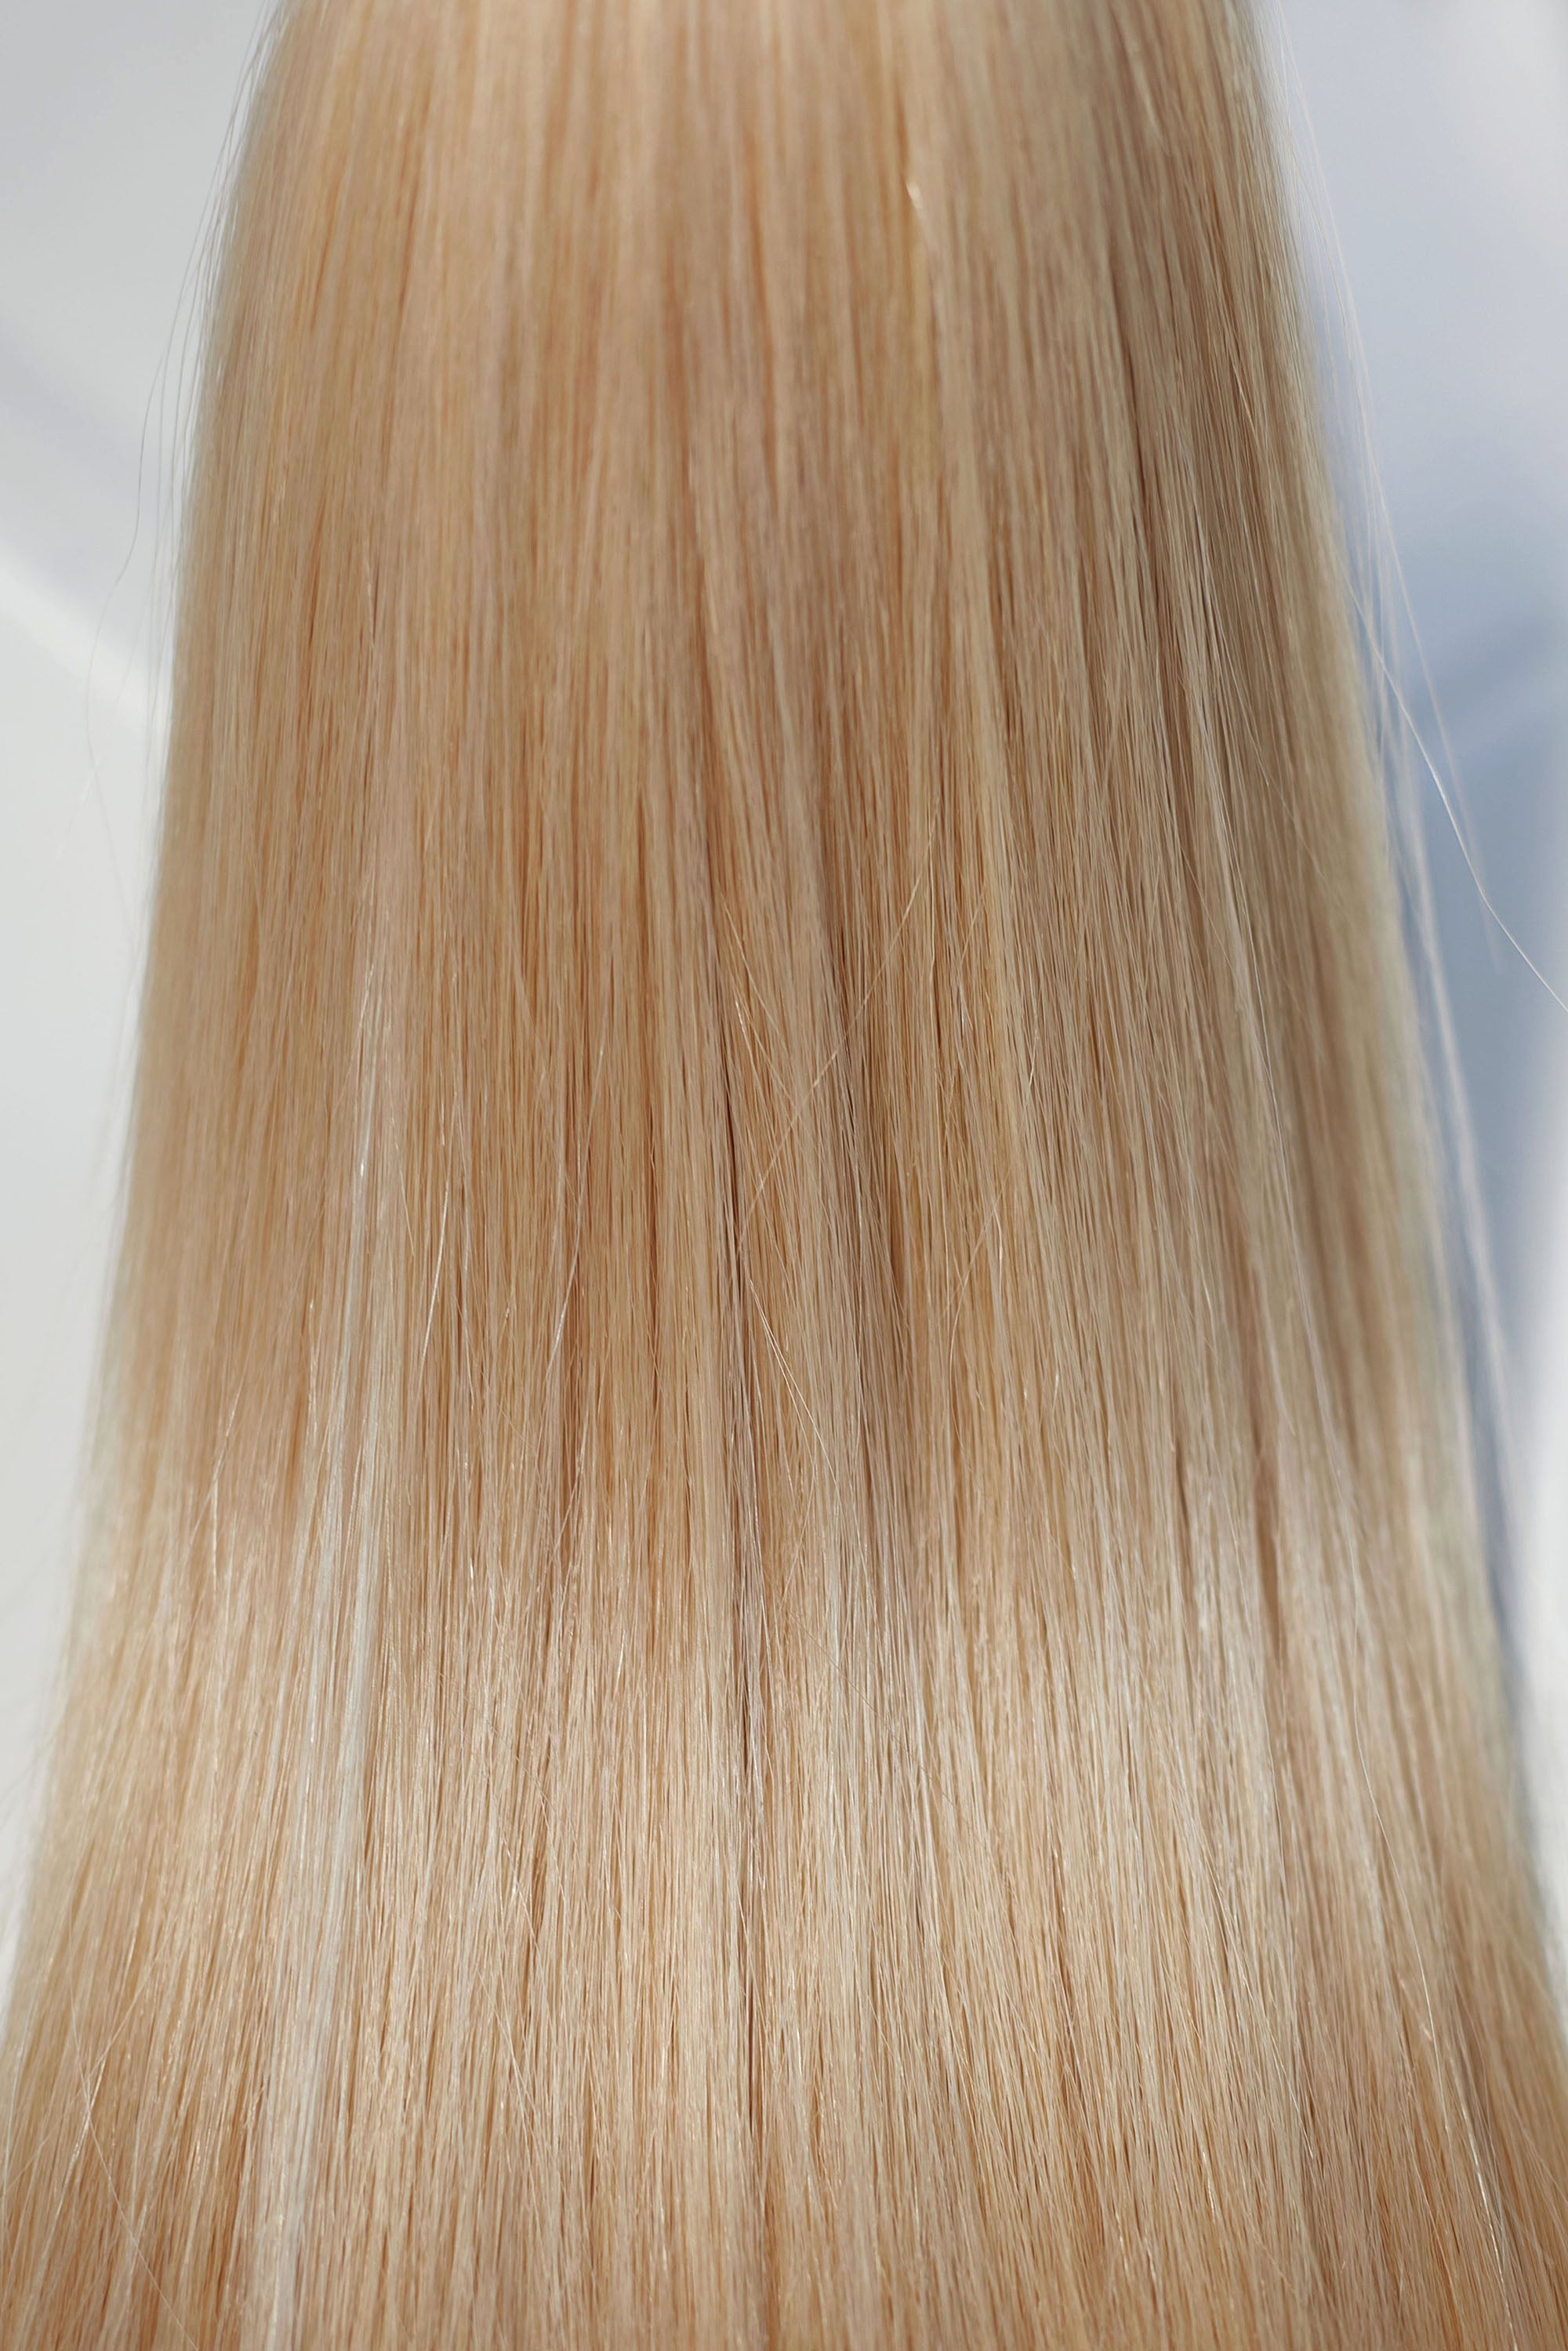 Behair professional Keratin Tip "Premium" 20" (50cm) Natural Straight Light Gold Blond #24 - 25g (Standart - 0.7g each pcs) hair extensions